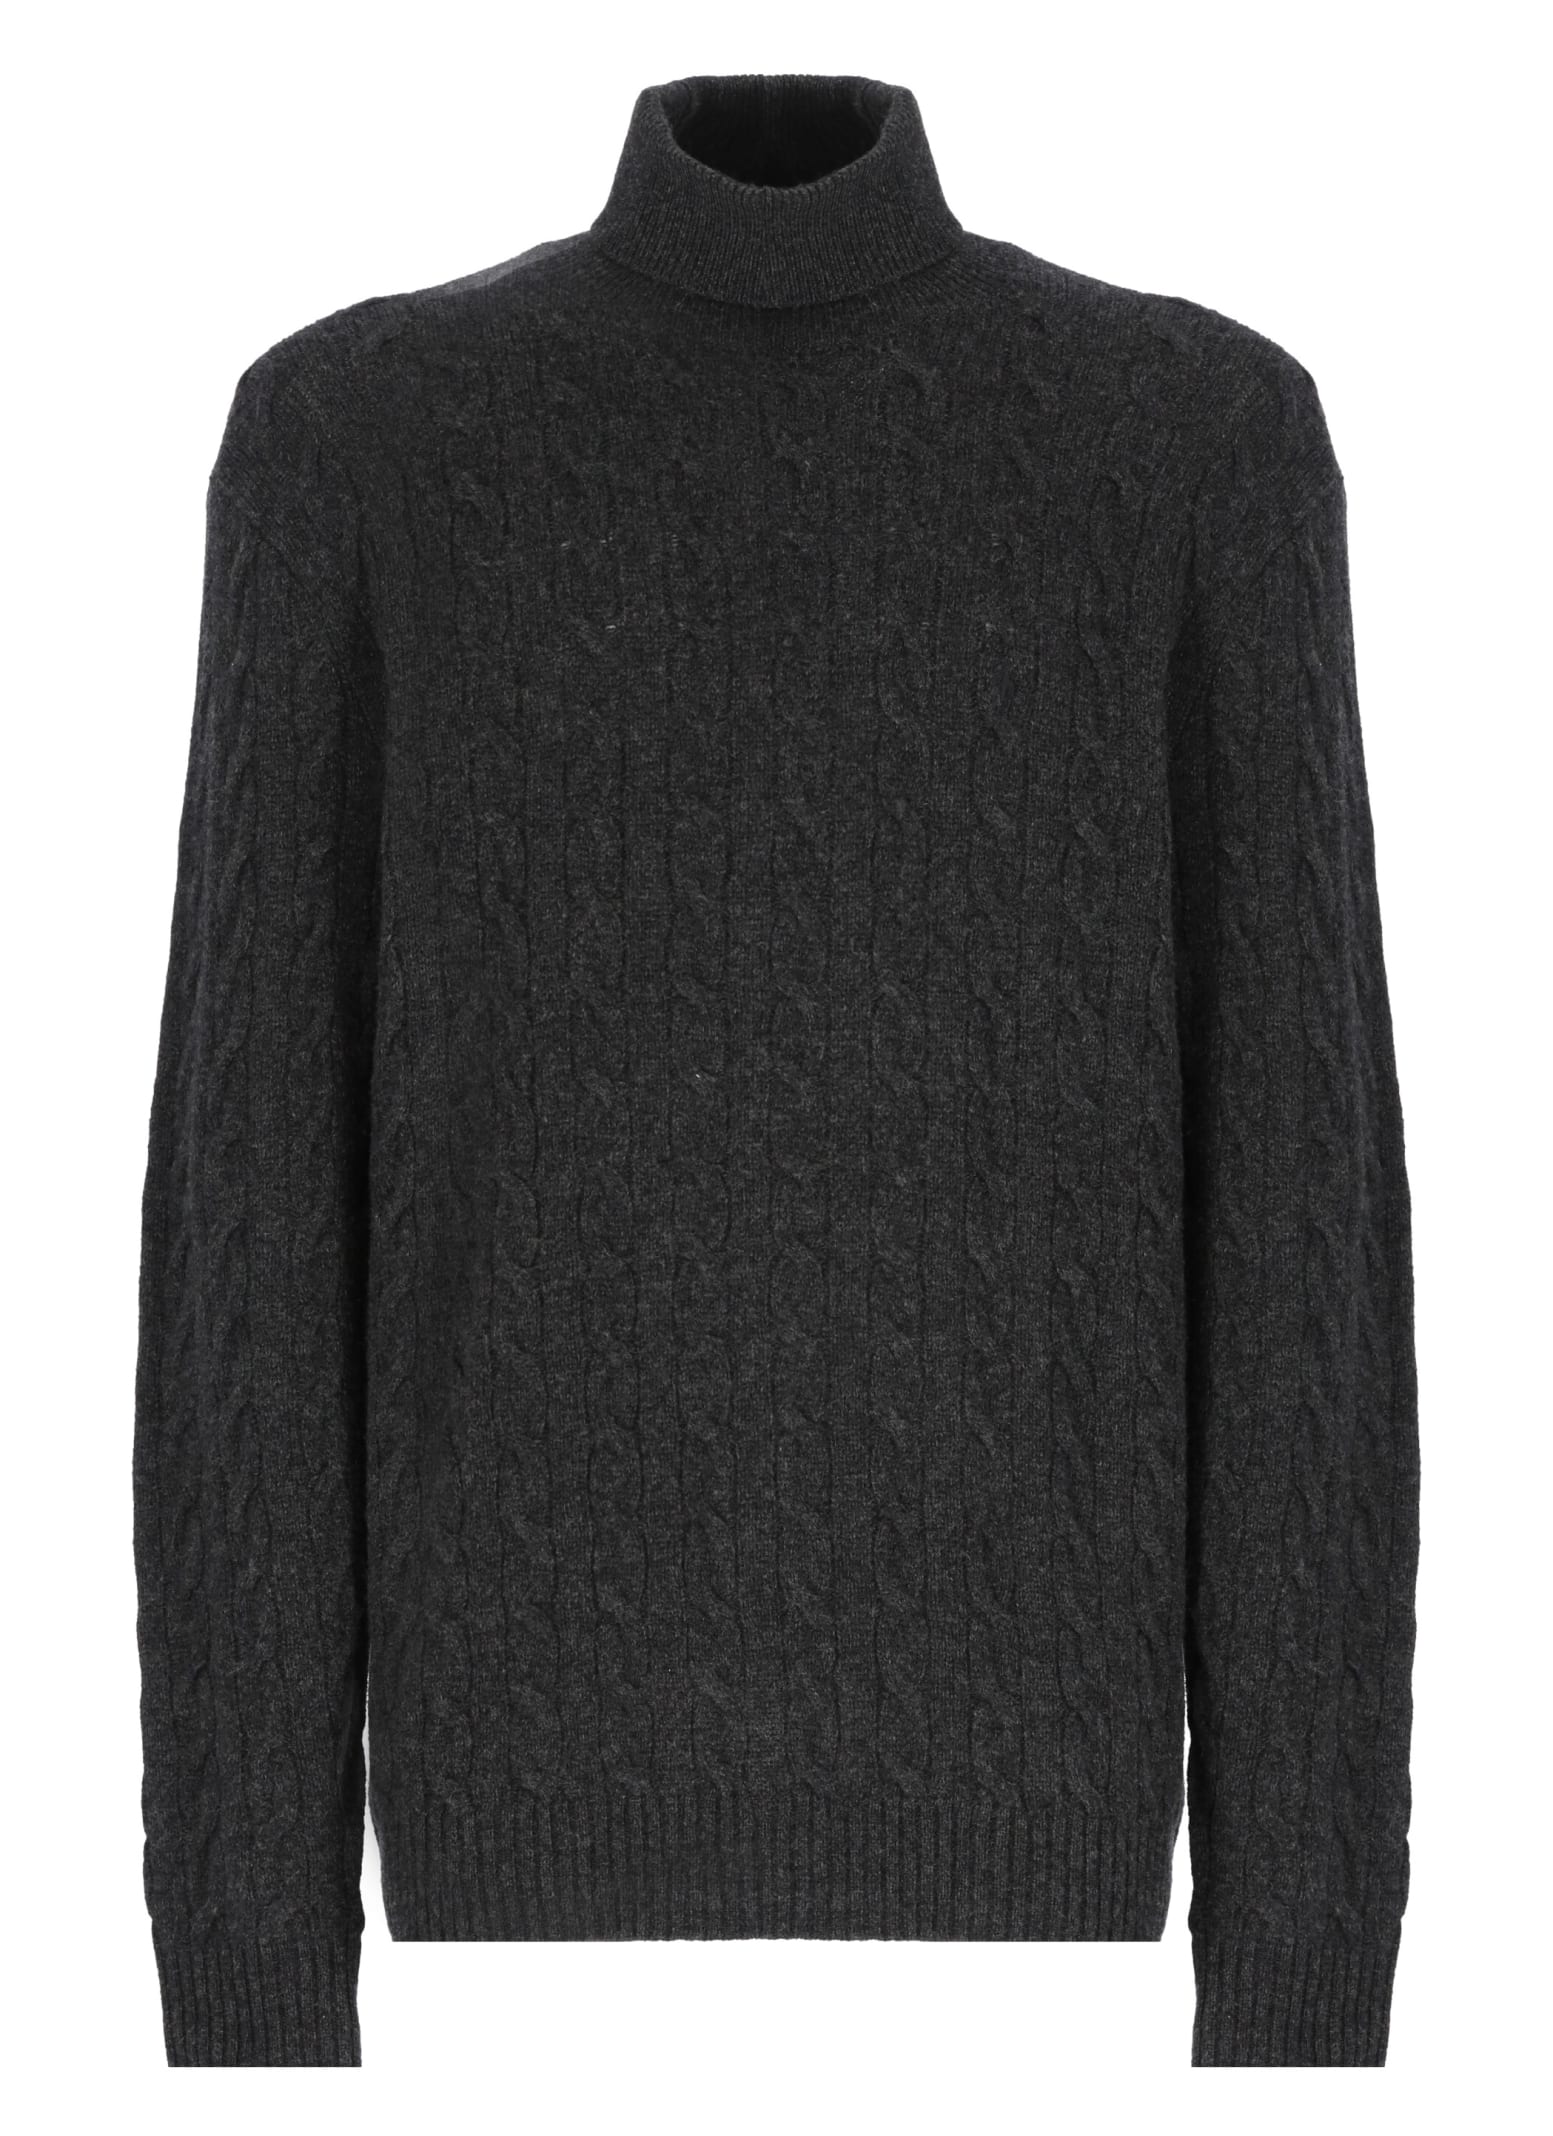 Ralph Lauren Cashmere Aran Sweater